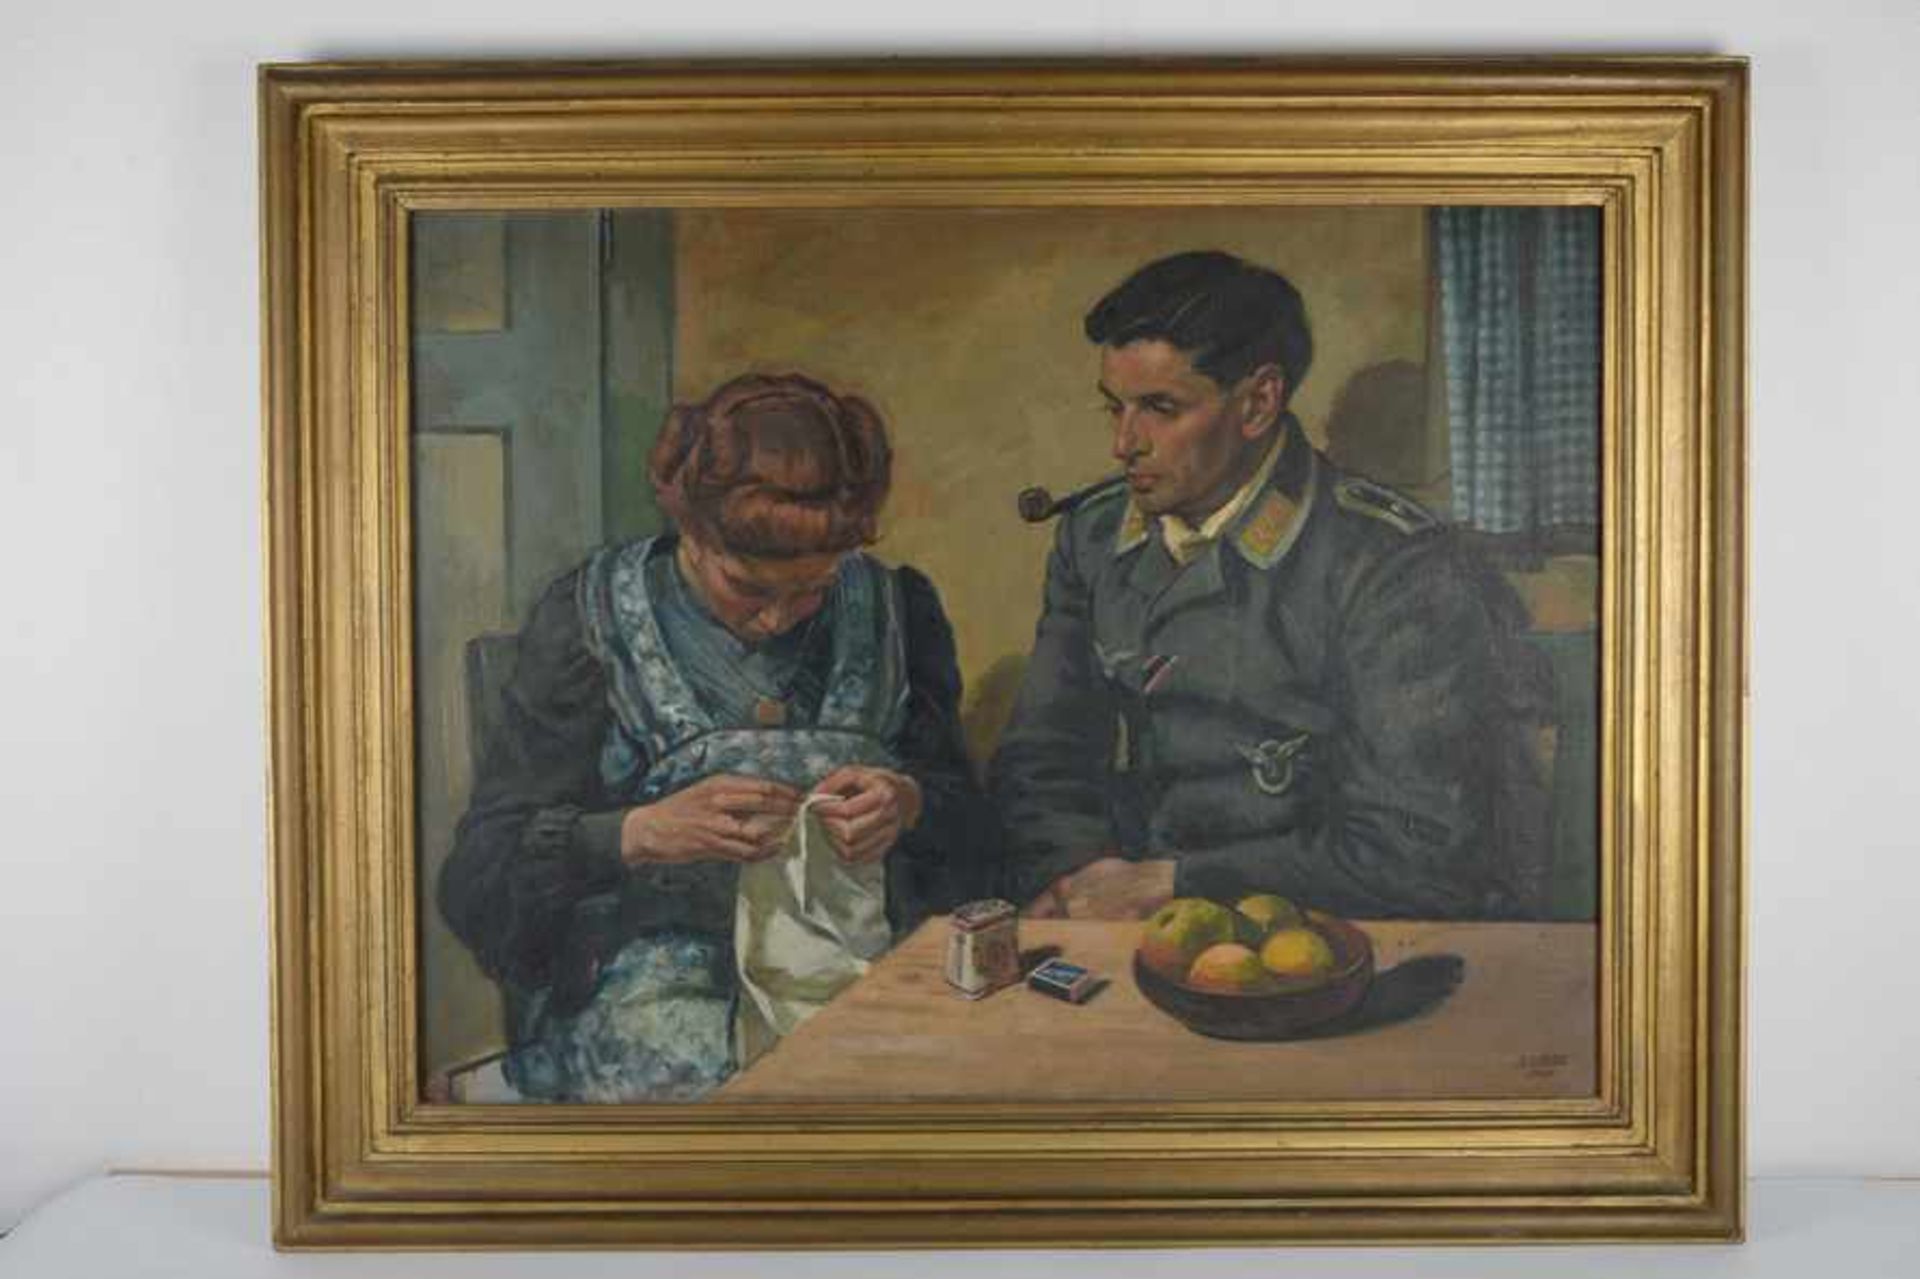 Dekorierter Fliegersoldat mit Ehefrau. August Garbe (Niedersächsischer Kunstmaler, Akademie der